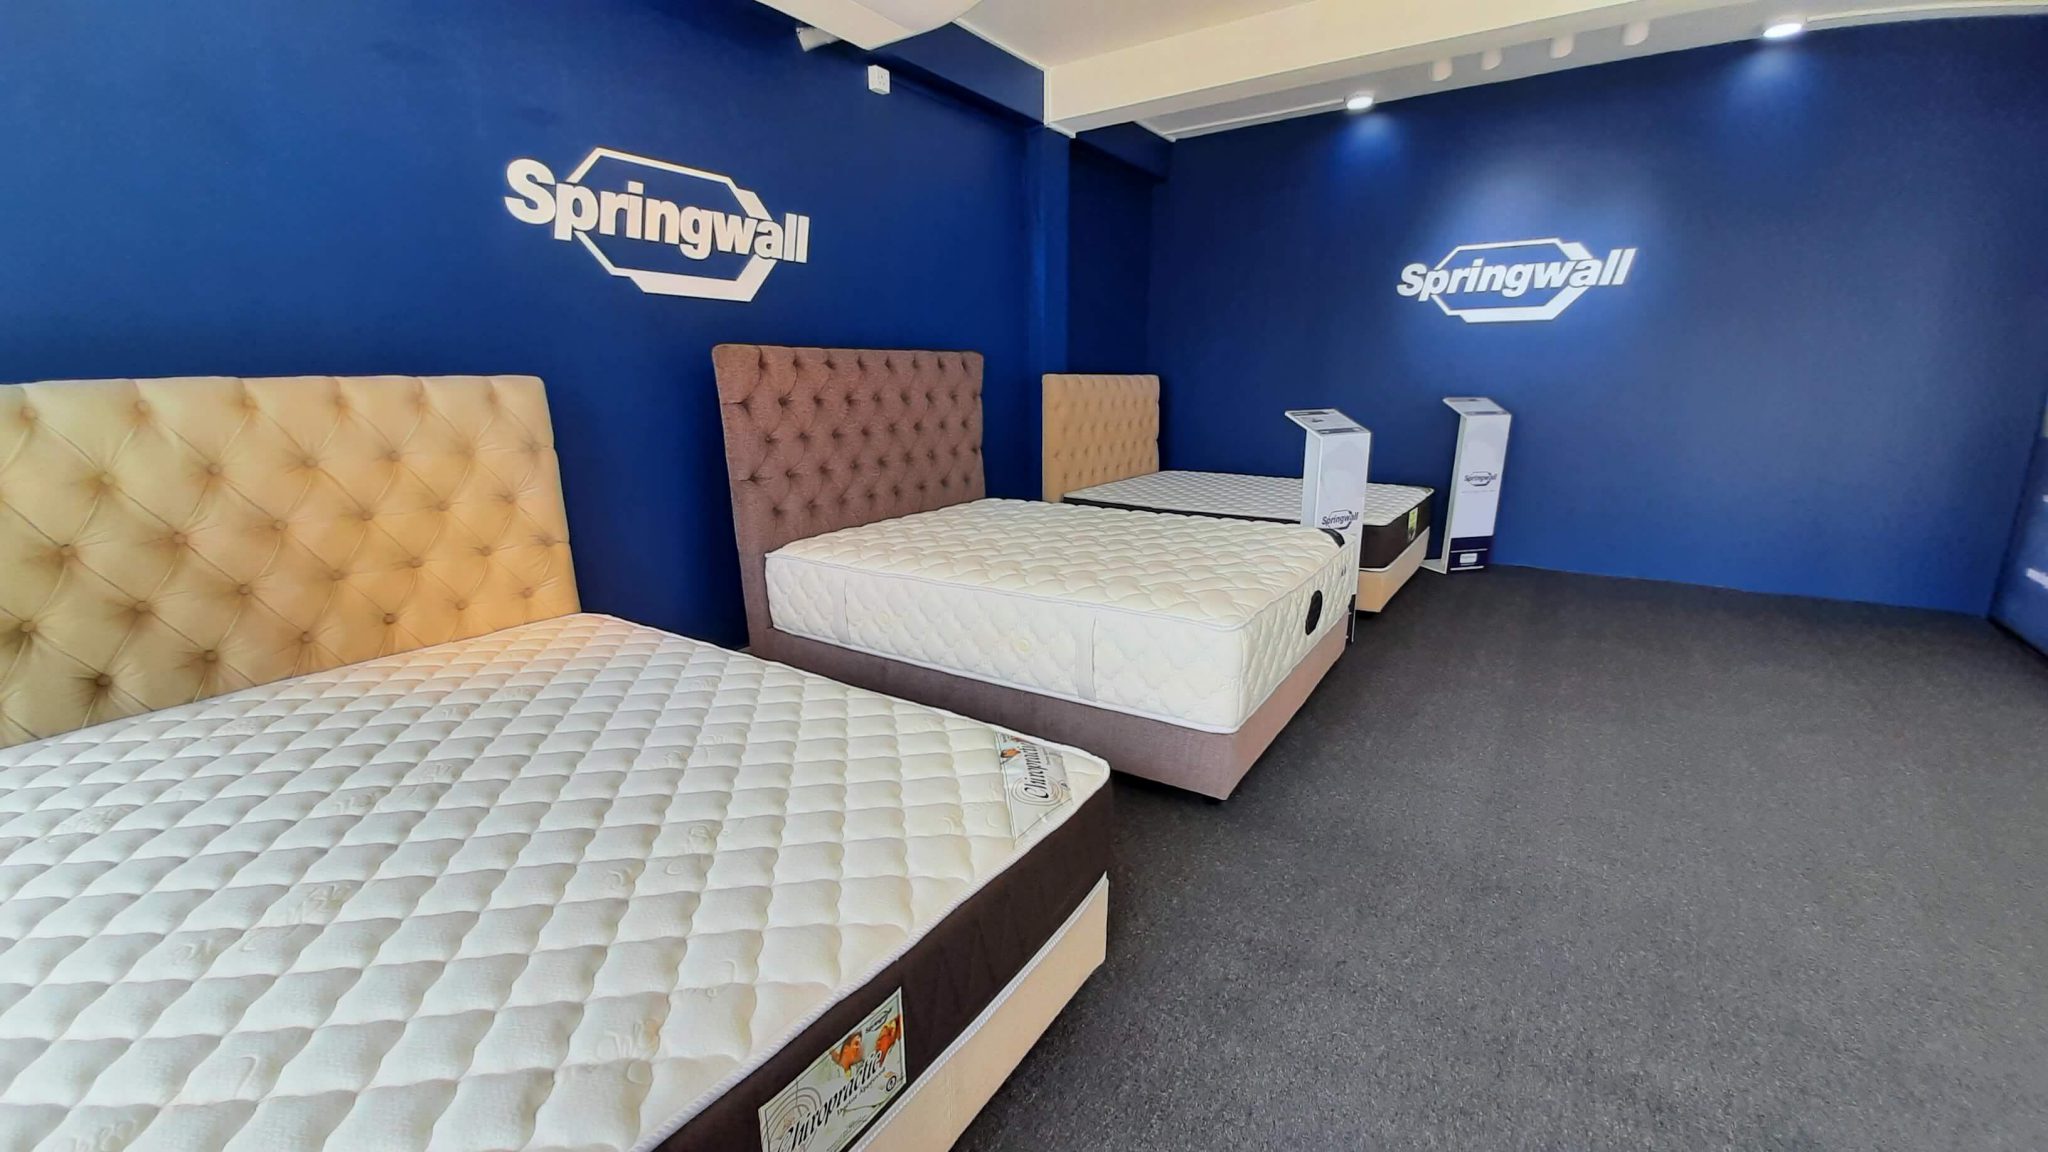 springwall foam mattress reviews